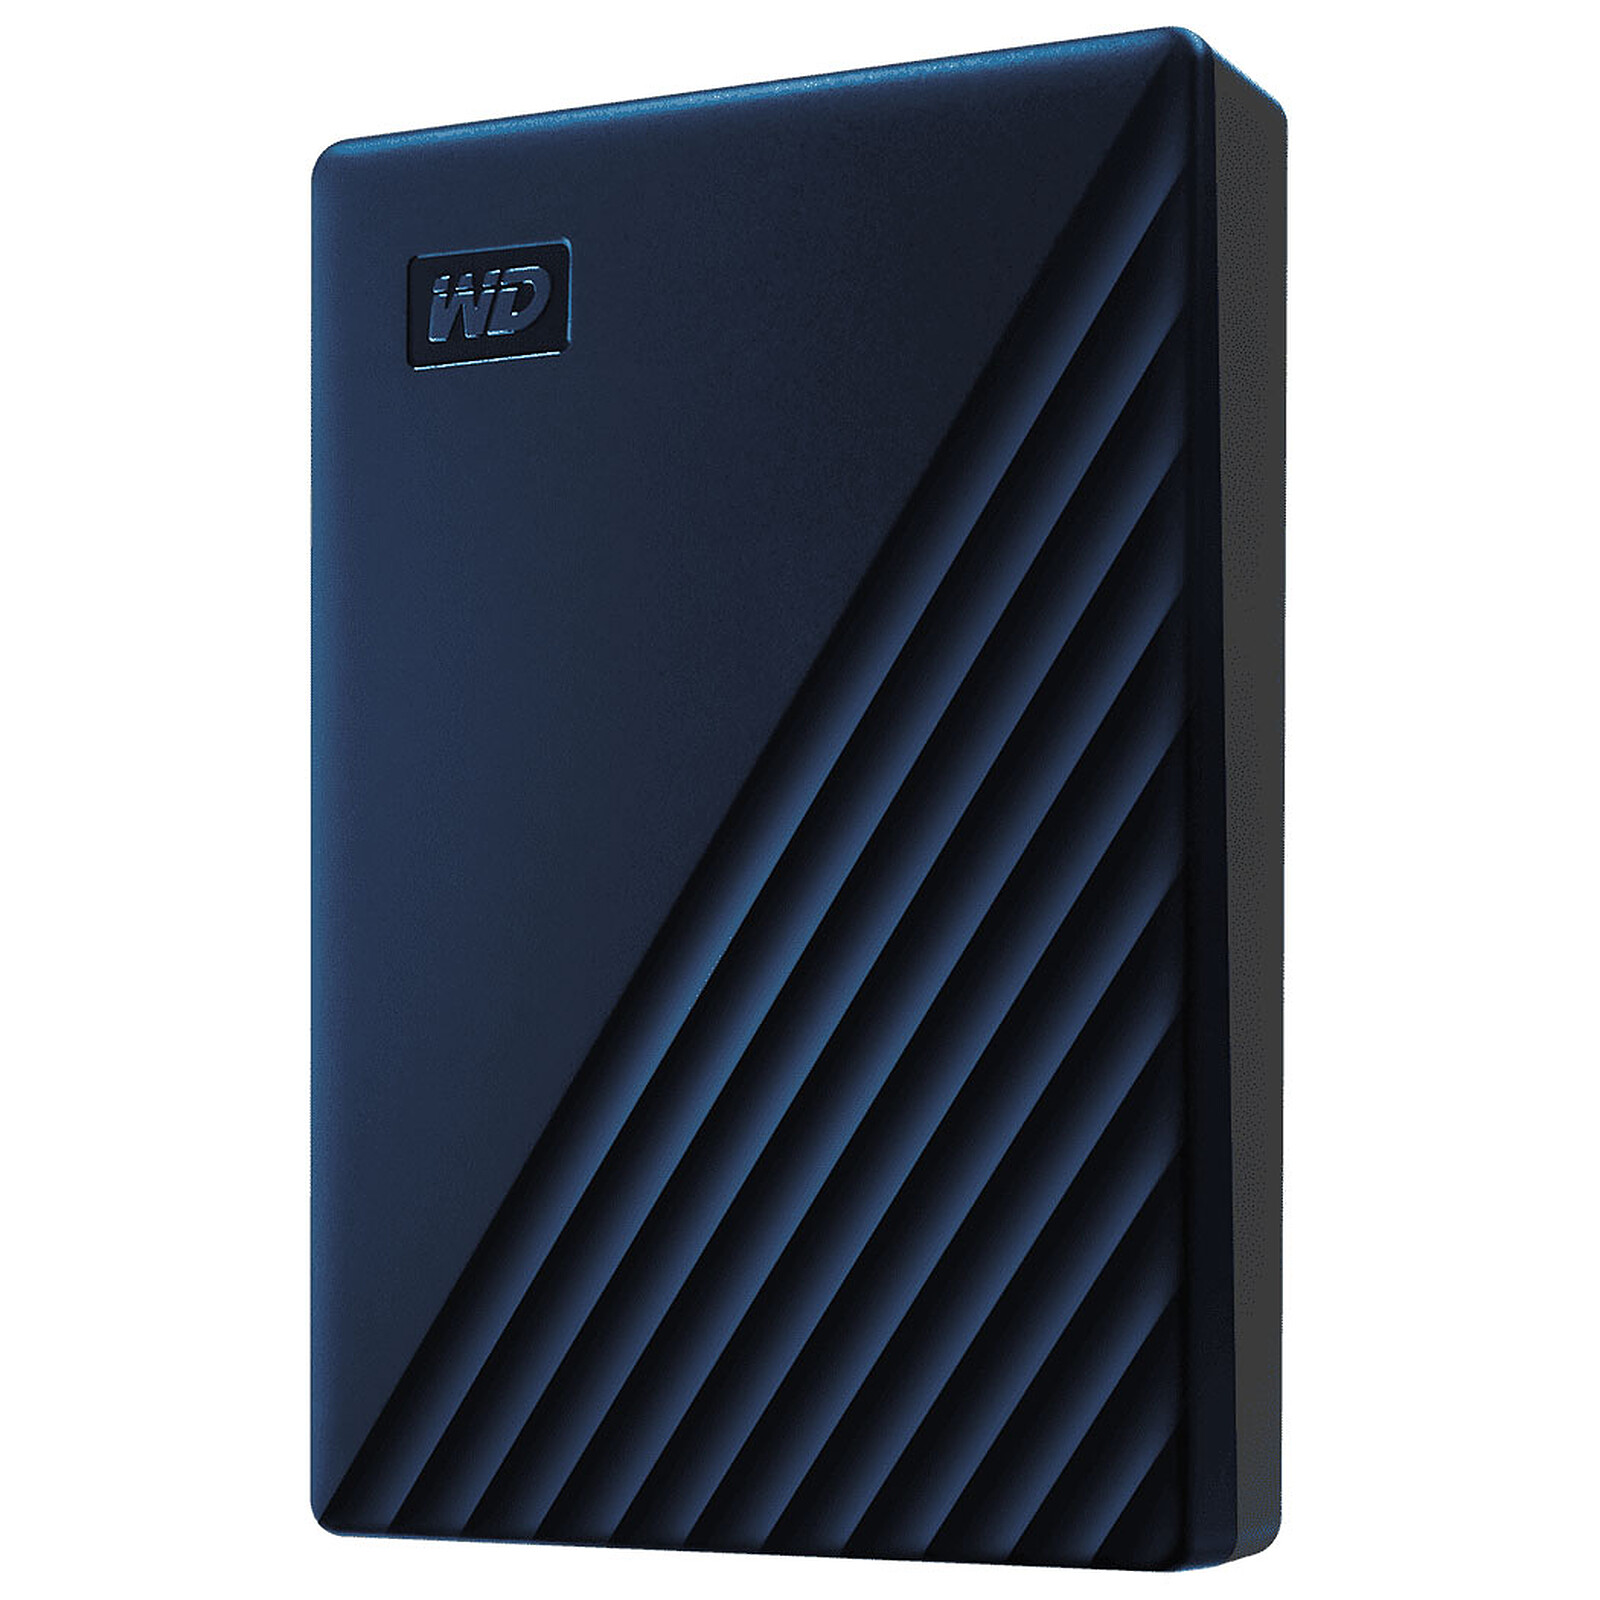 2TB, Blue Disco rigido esterno di tipo C compatibile con computer portatile Mac e PC disco rigido portatile da 2 TB 